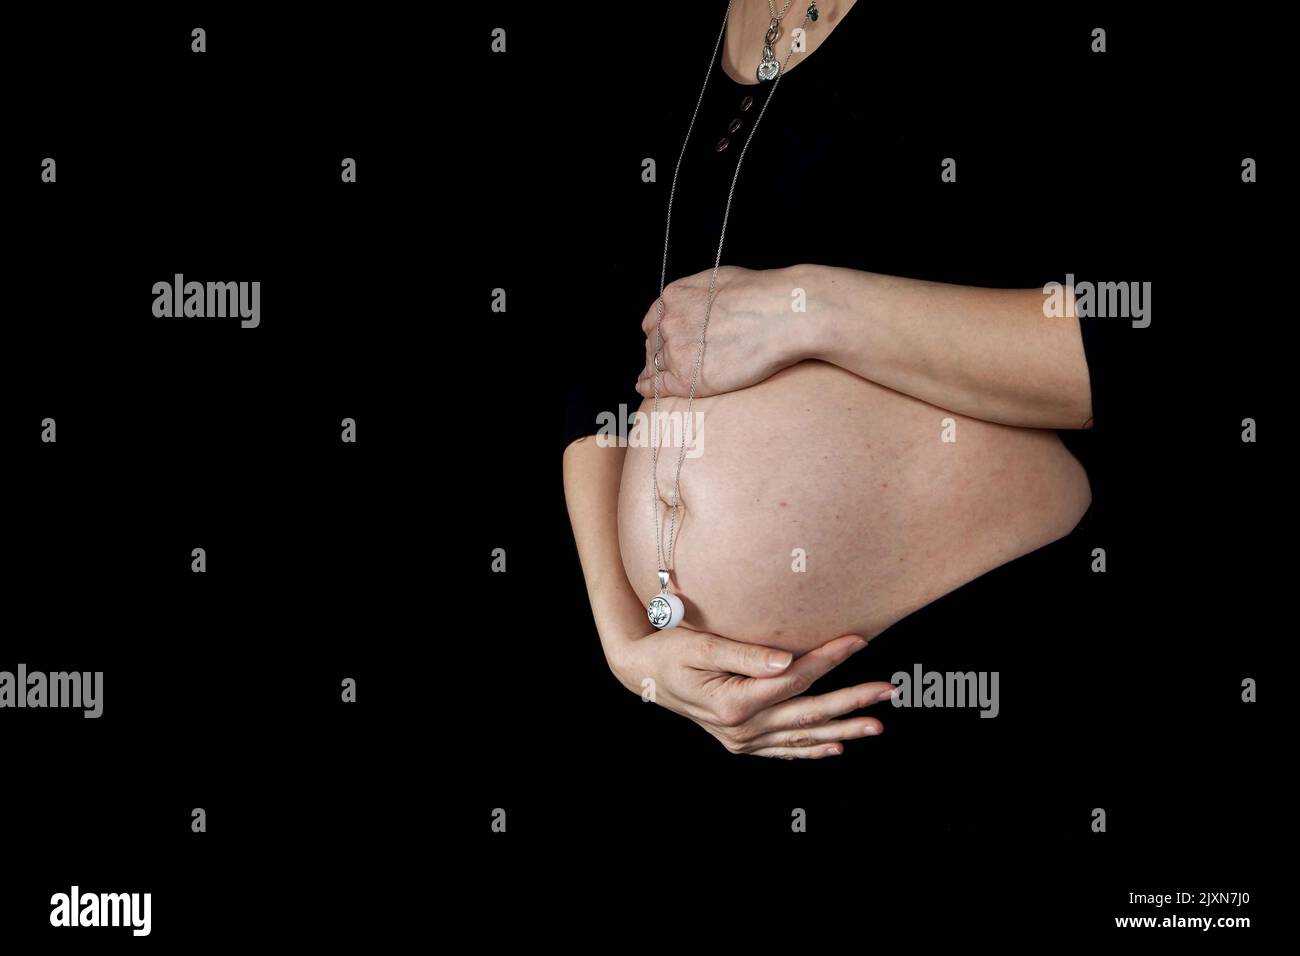 Detail des Bauches einer schwangeren Frau mit einer kleinen Glocke am Bauchnabel, um das Baby ruhig zu halten. Alles schwarz, Kleidung und Hintergrund, wir sehen nur ihre Hände Stockfoto